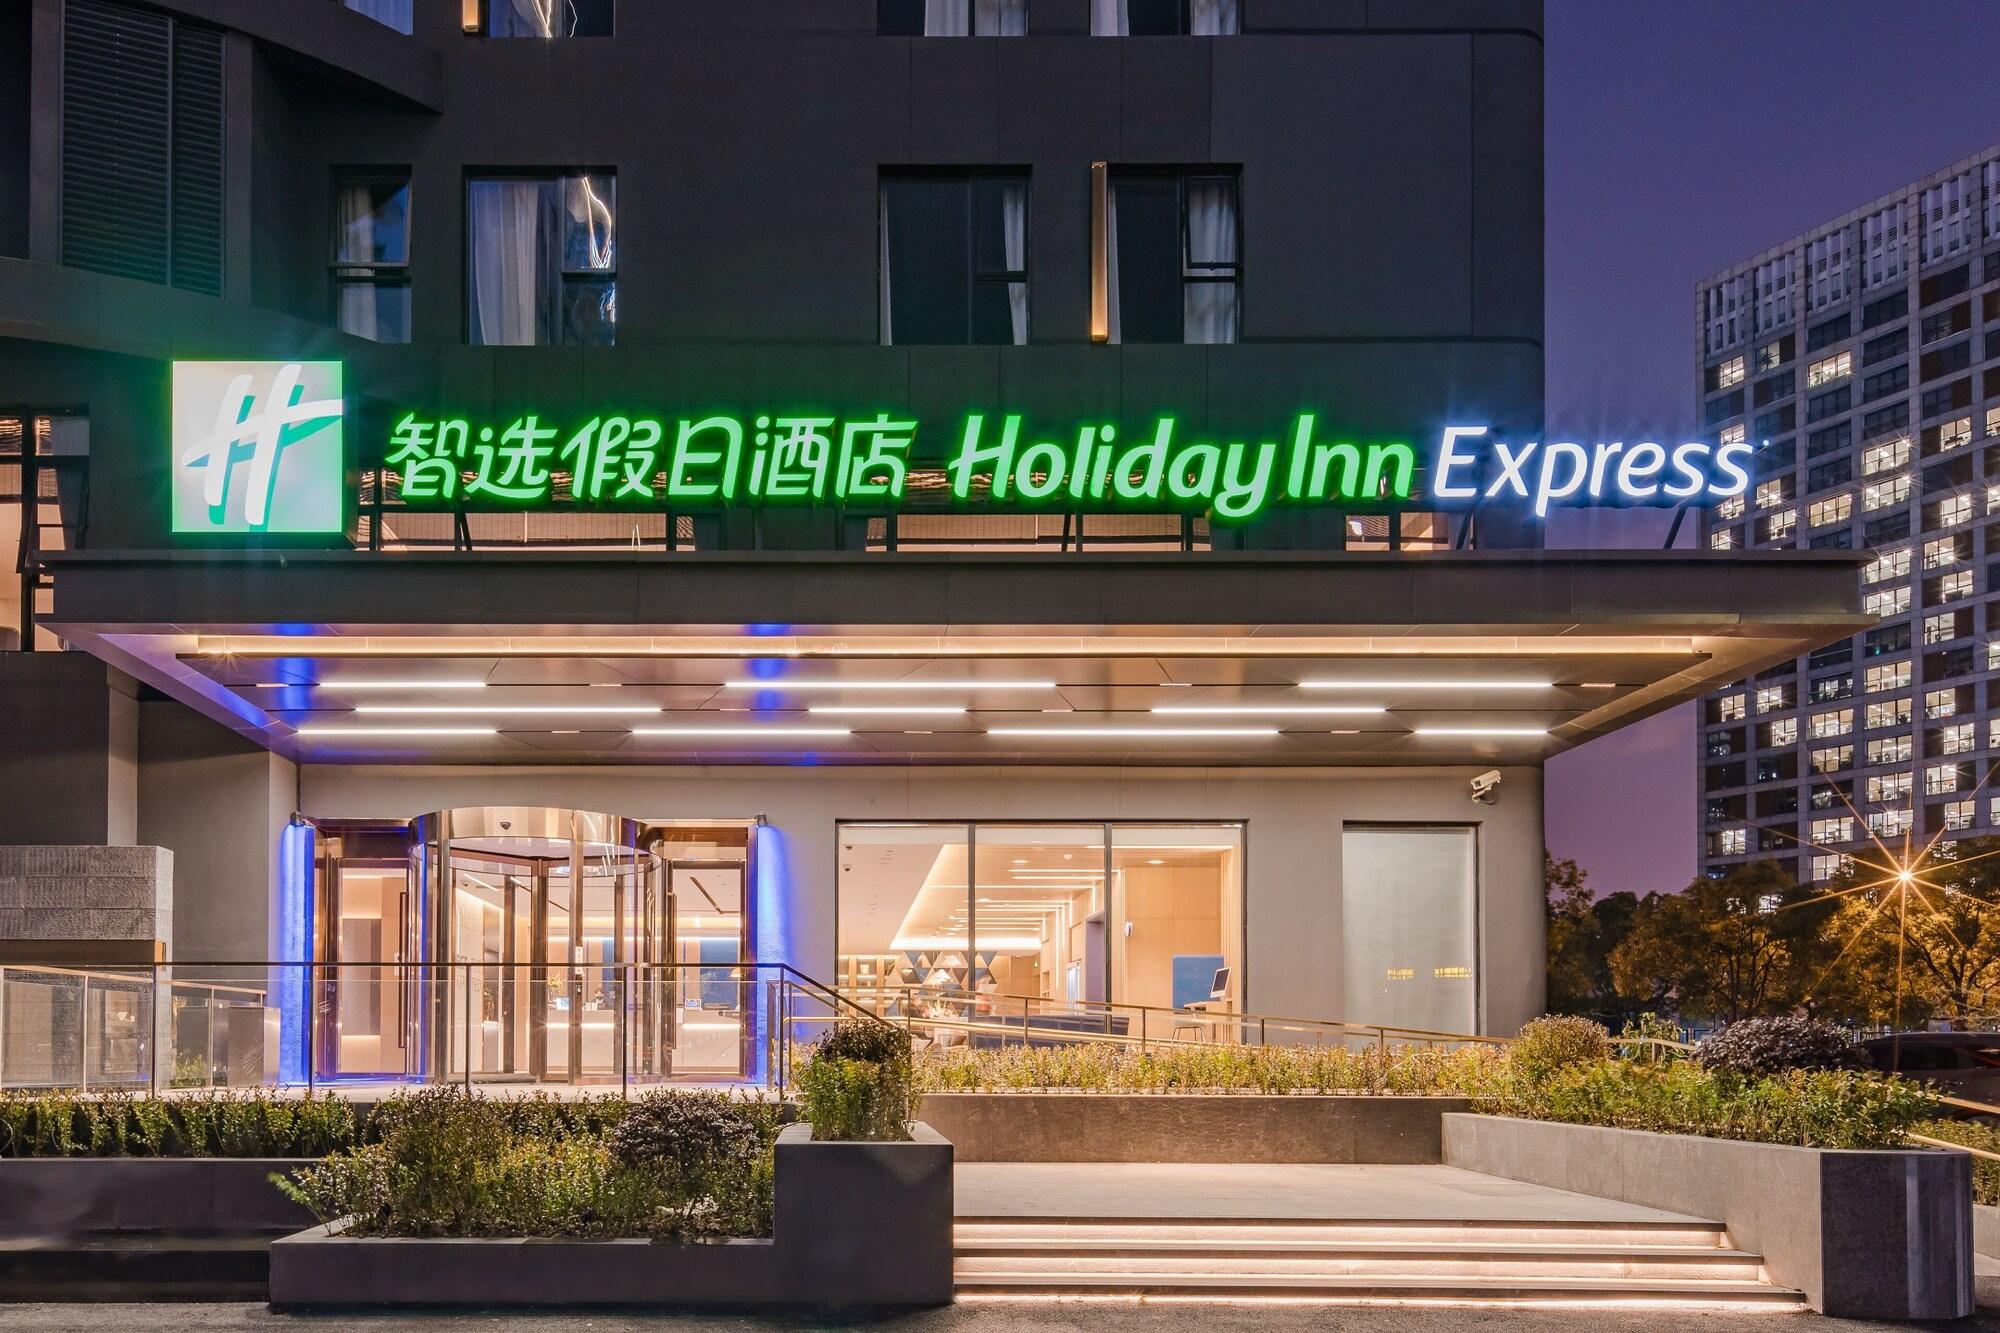 Vista da fachada Holiday Inn Express Shanghai Expo Centre